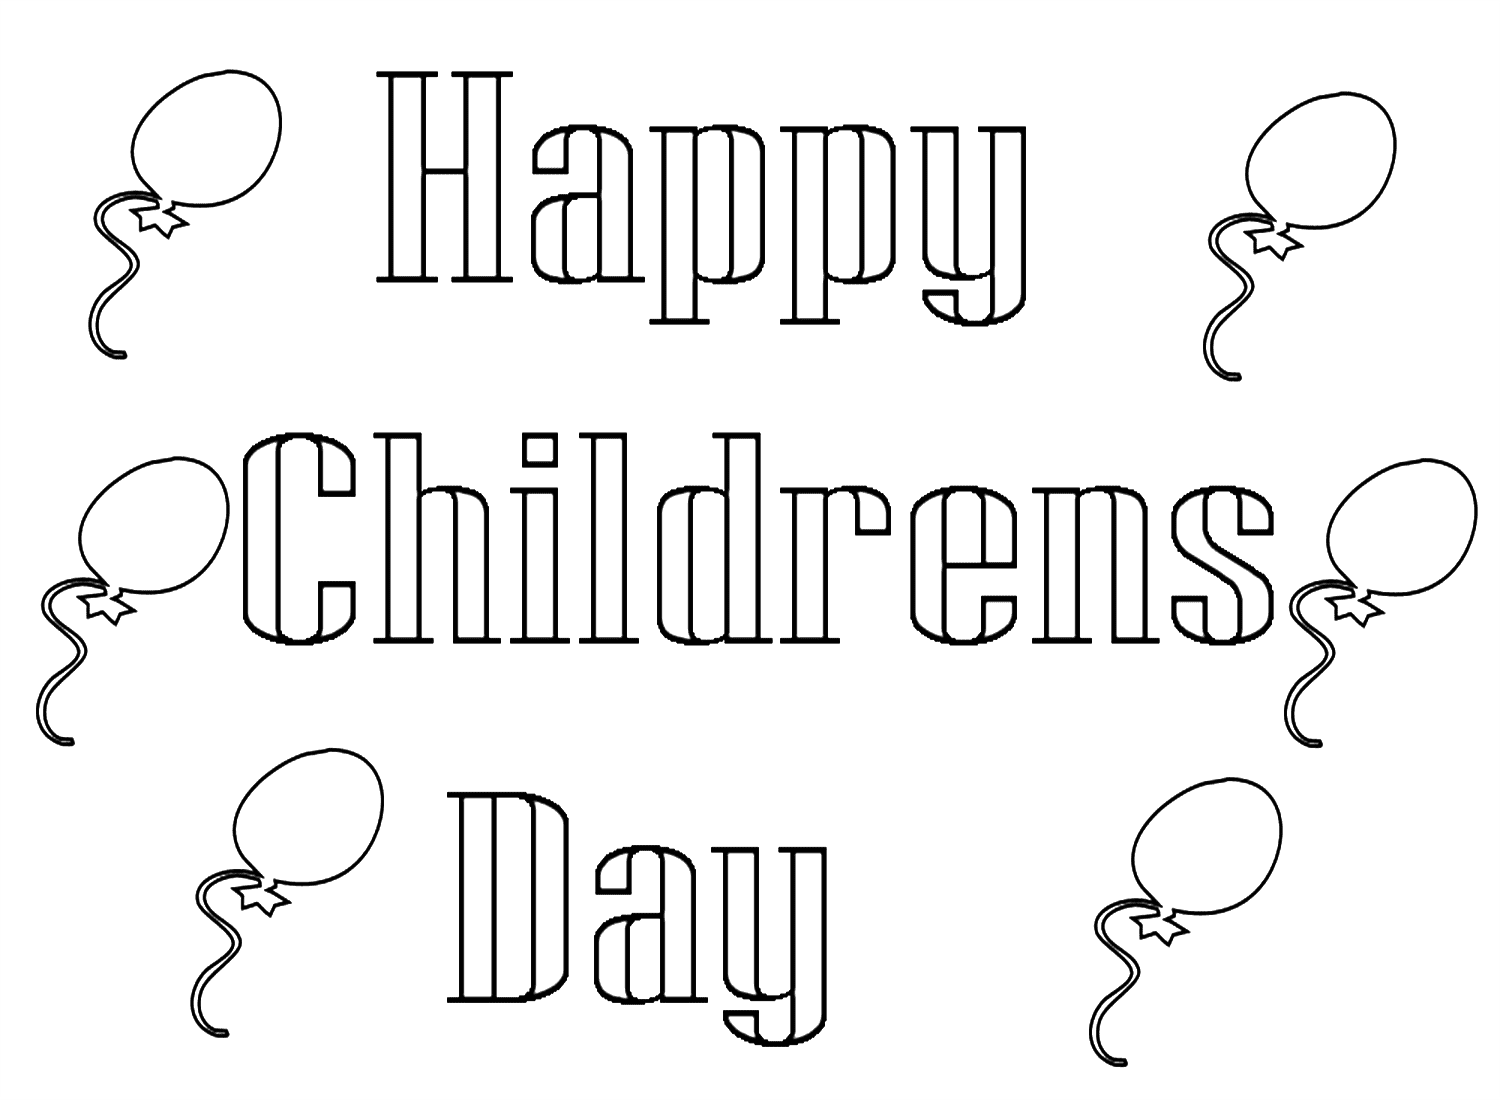 Feliz Dia das Crianças para impressão gratuita do Dia das Crianças